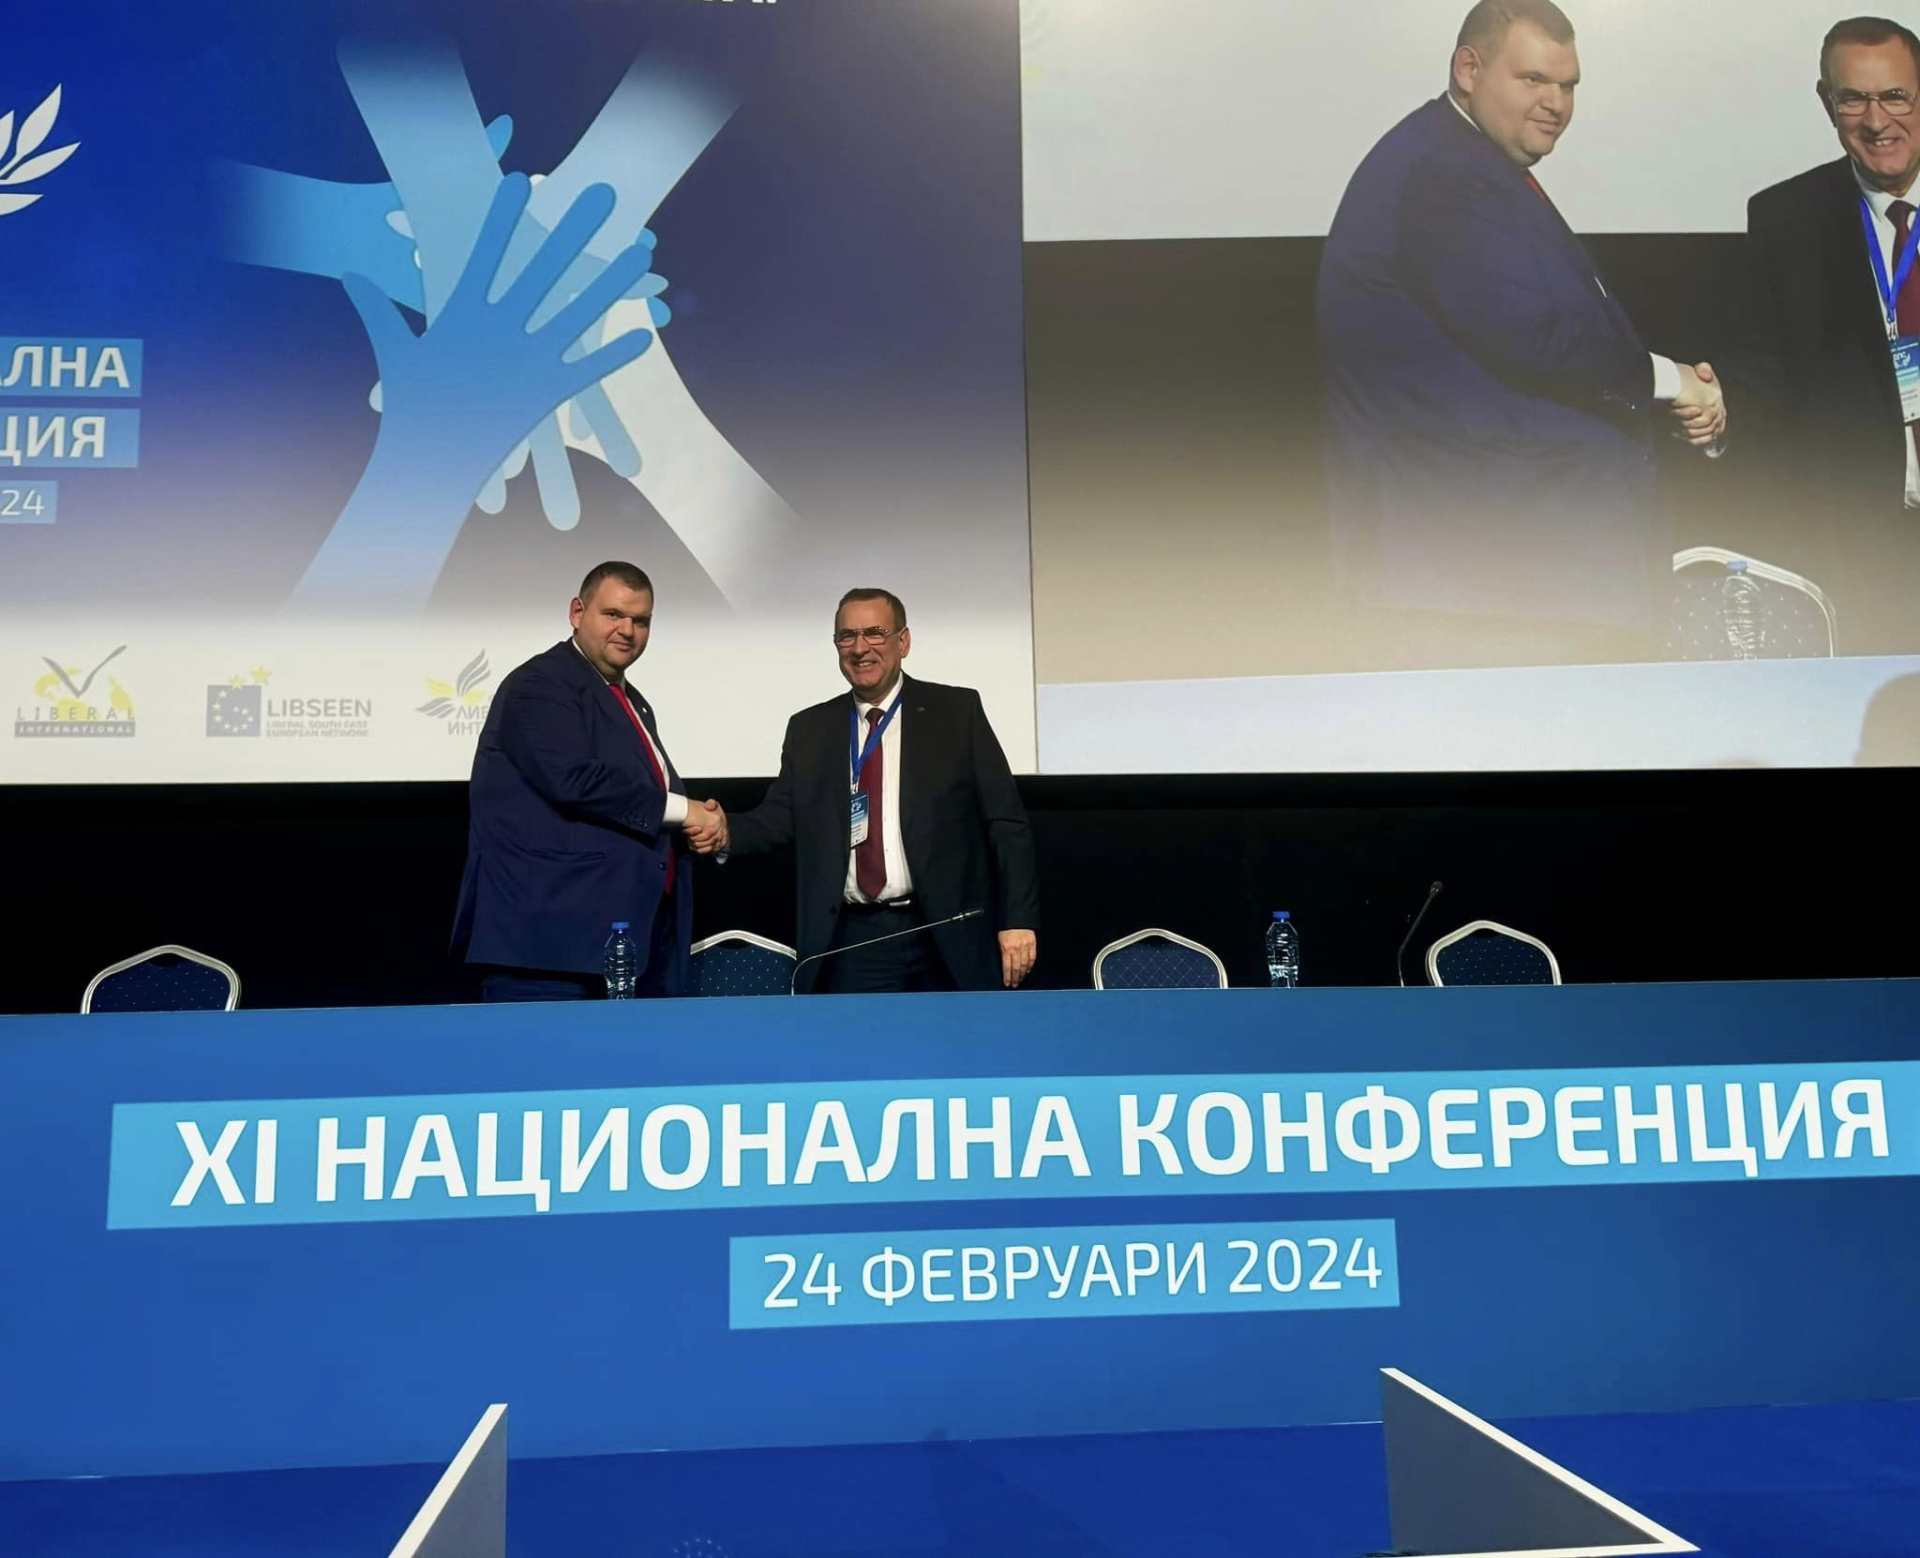 Единодушно XI Националната конференция на ДПС избра за председатели  Делян Пеевски и Джевдет Чакъров